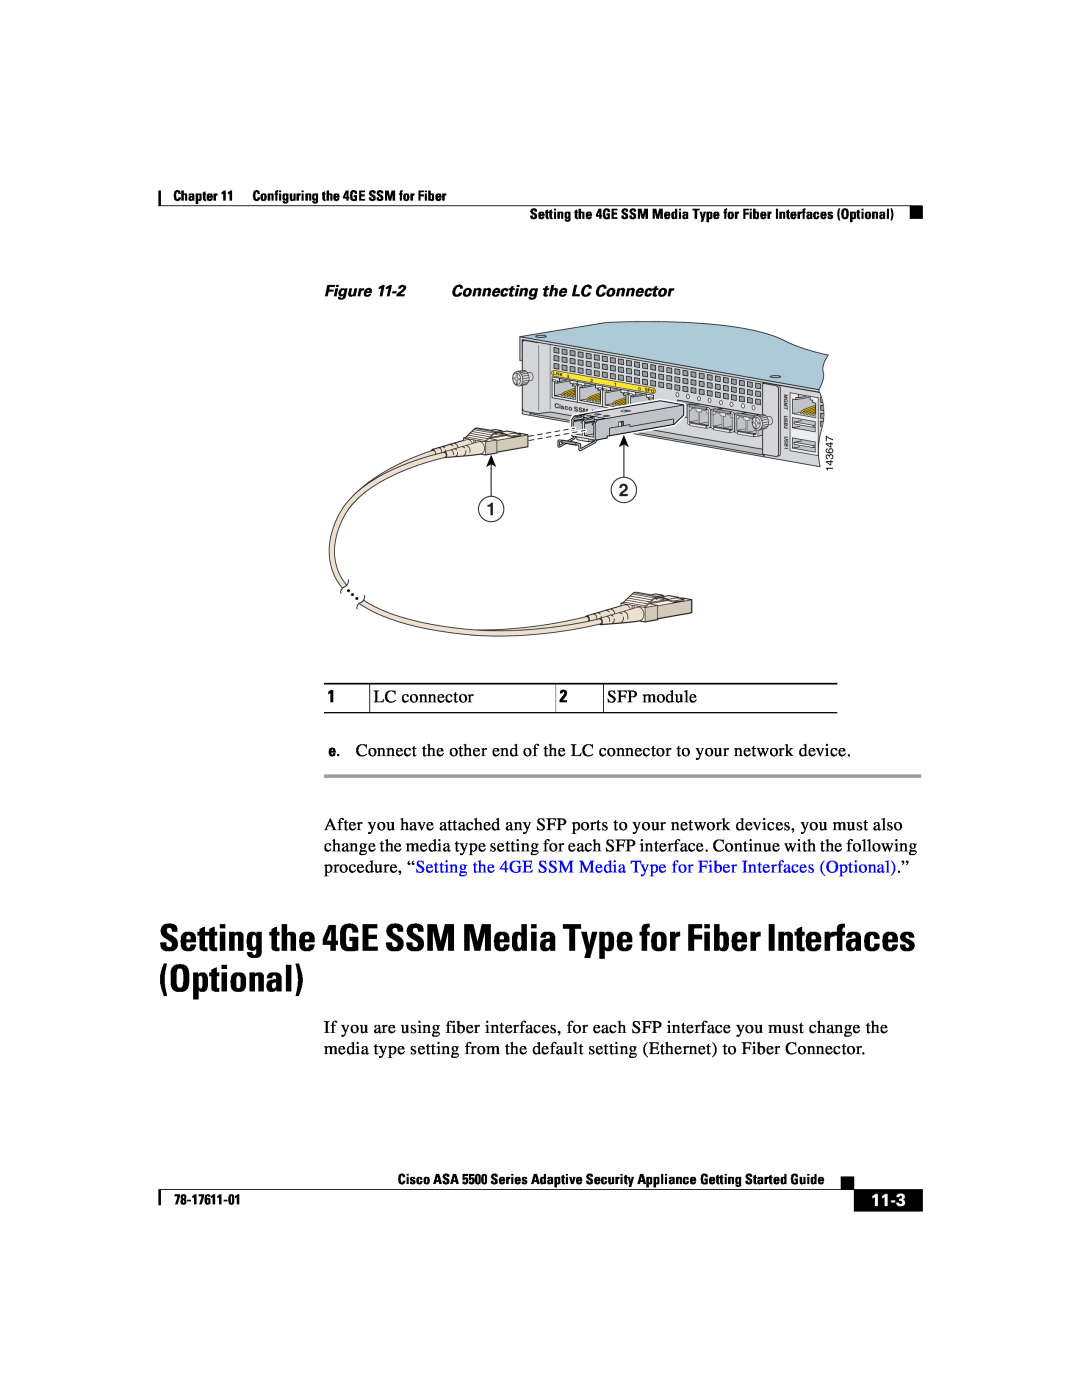 Cisco Systems ASA 5500 manual LC connector, 11-3 